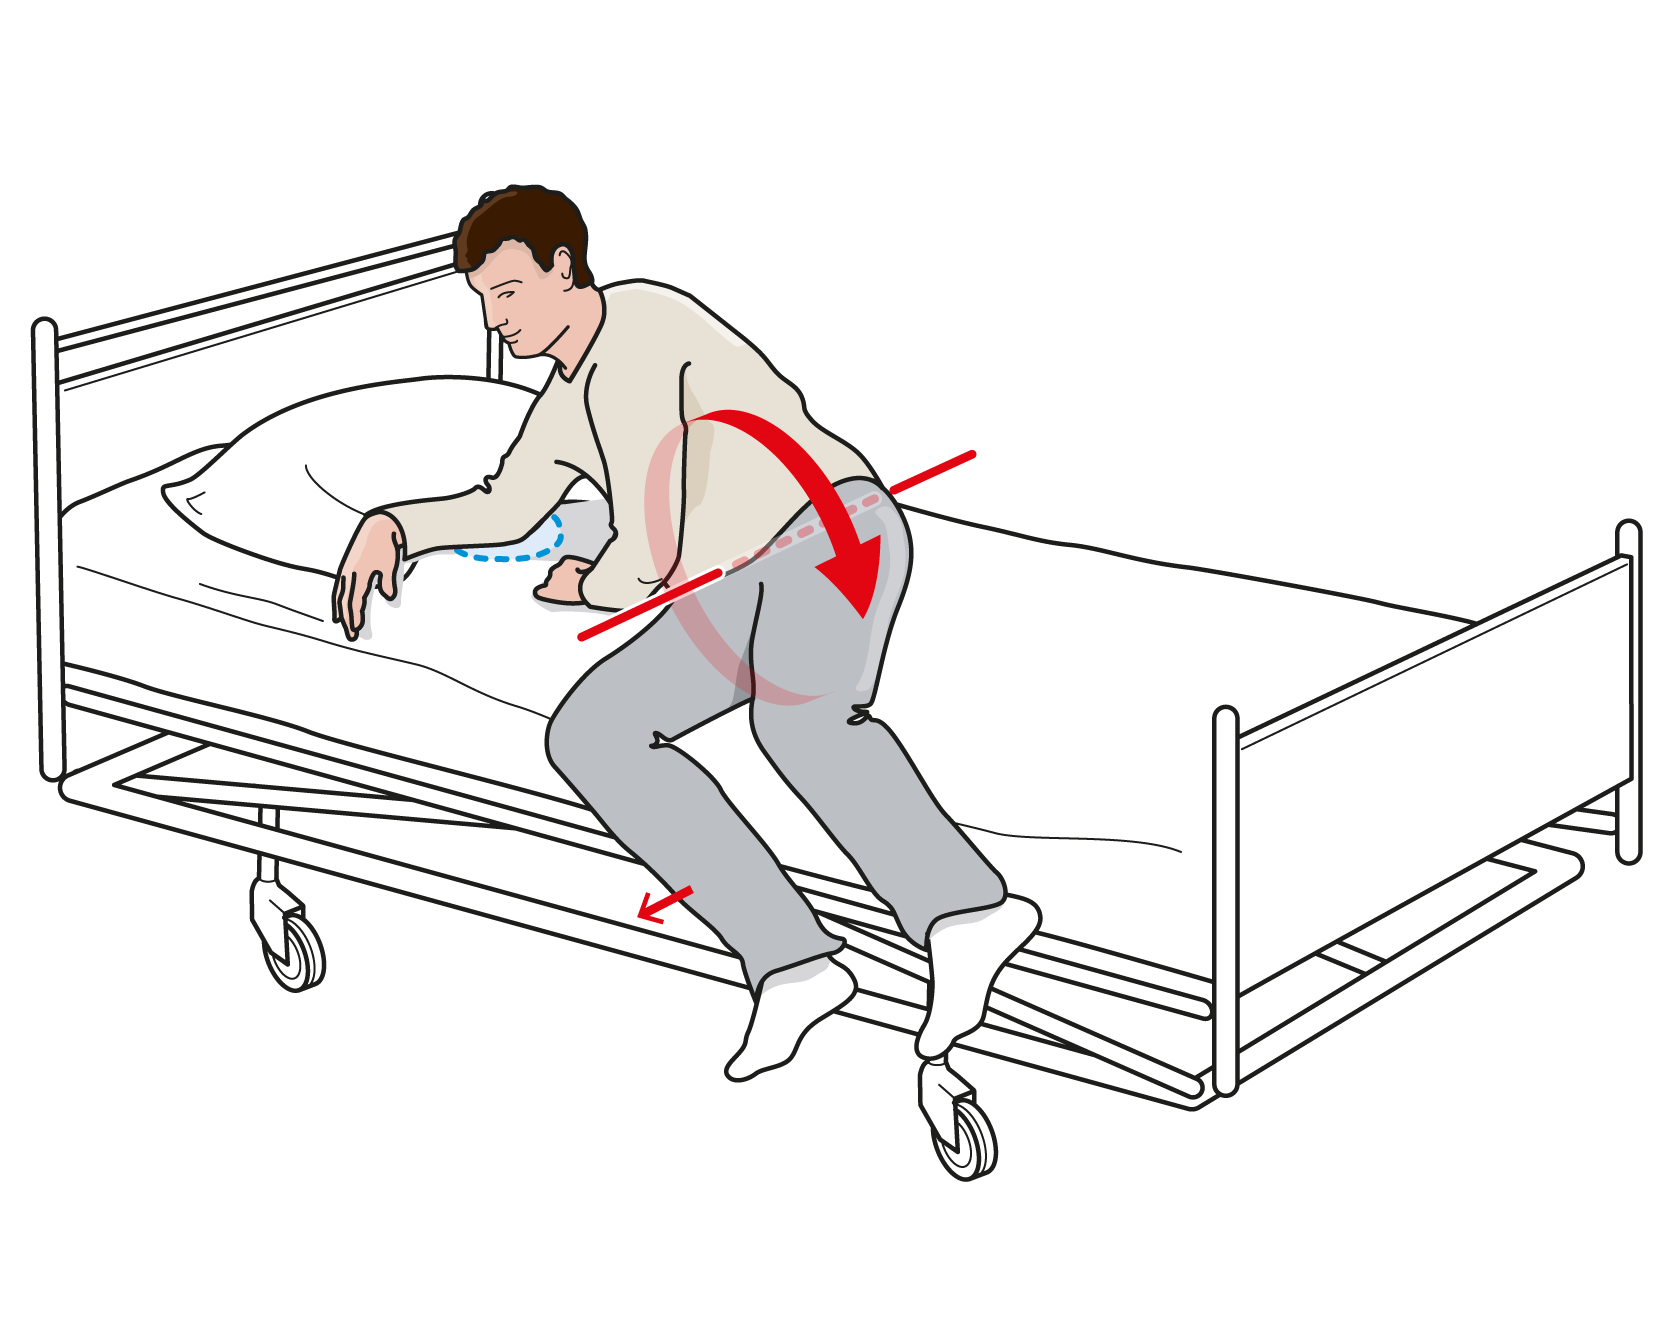 Illustration om visar hur person reser sig upp från att ha legat på sidan och samtidigt för benen över sängkanten